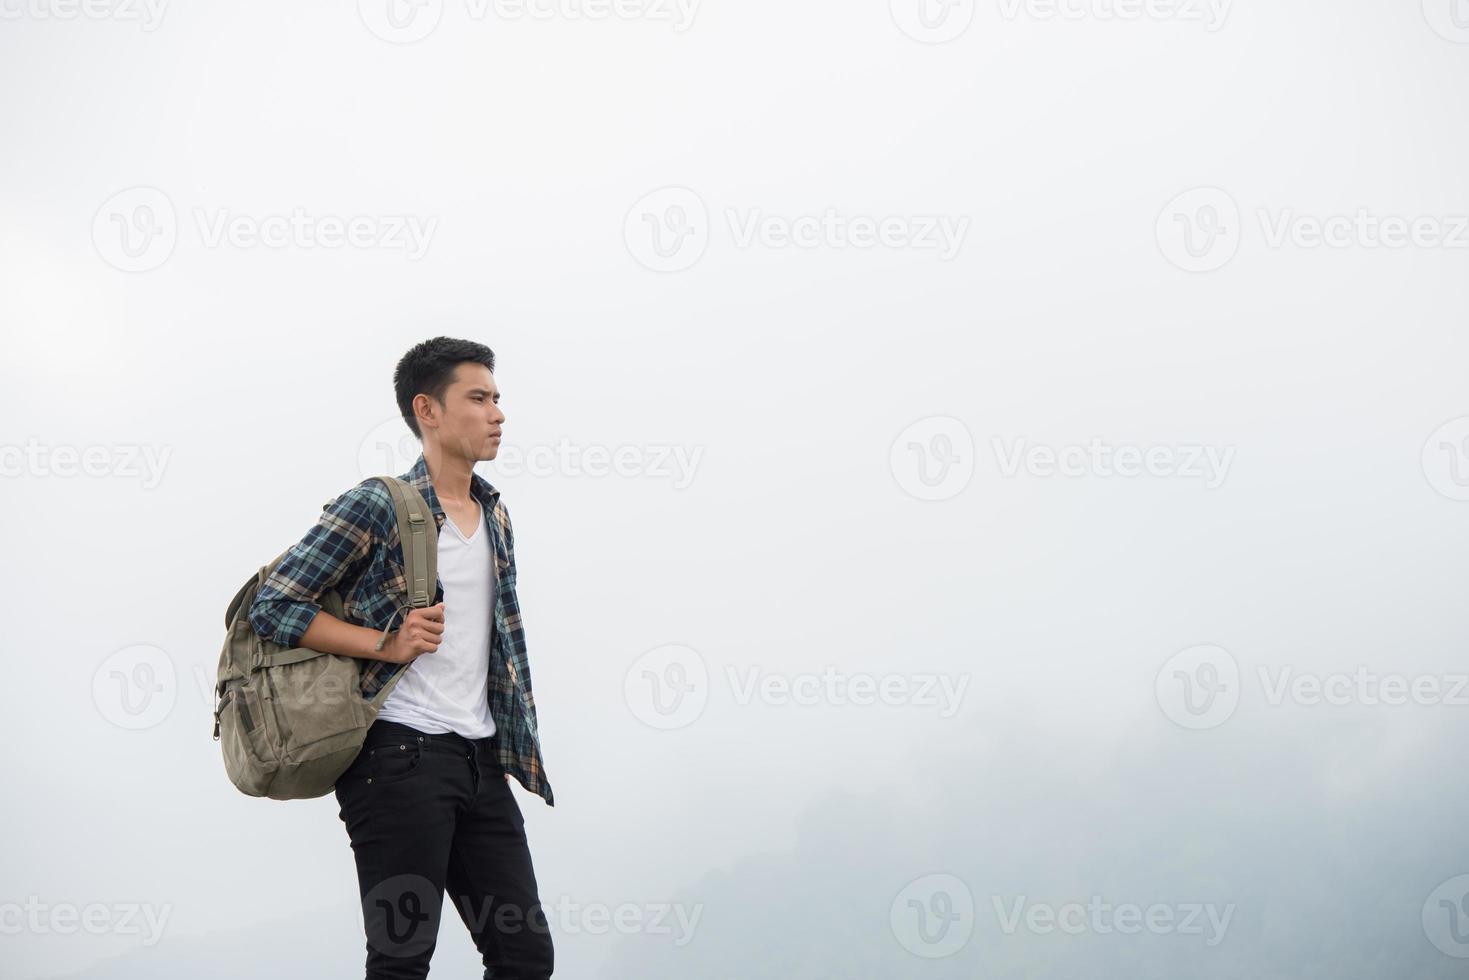 vandrare med ryggsäck som står på toppen av ett berg och njuter av naturen foto